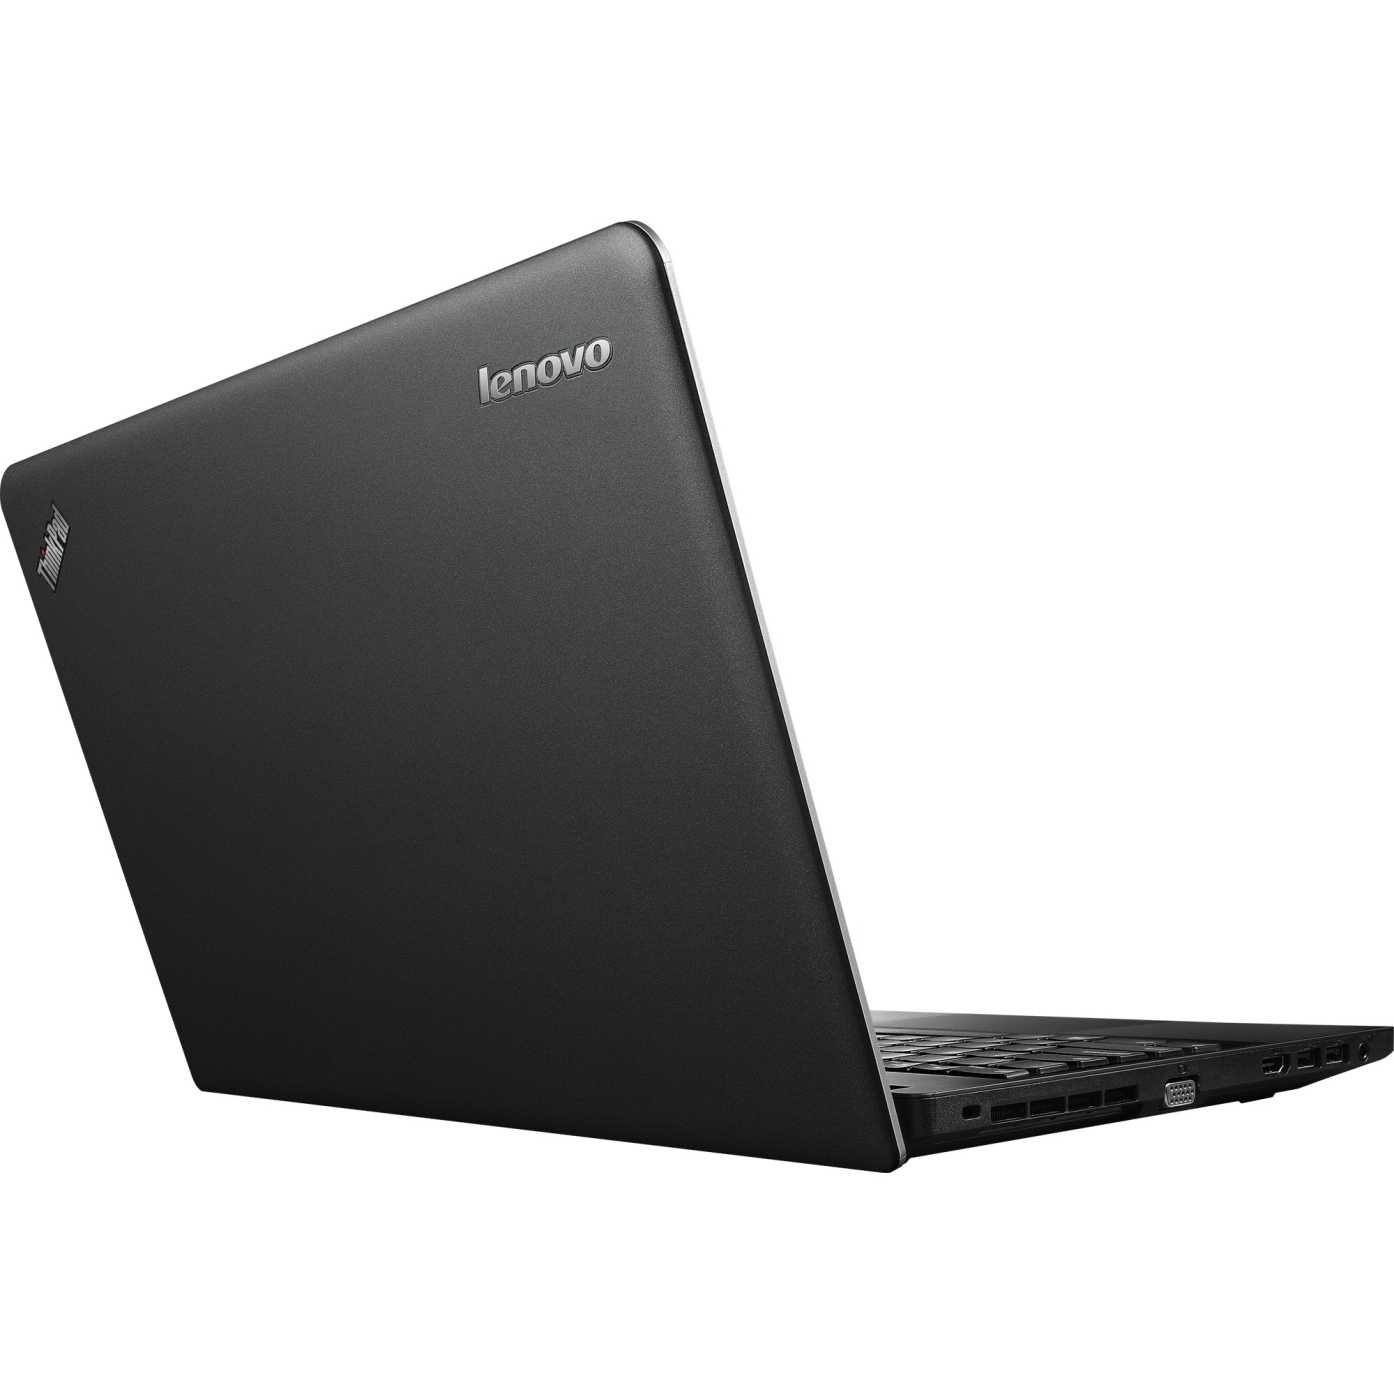 Lenovo thinkpad edge e540 20c6003age